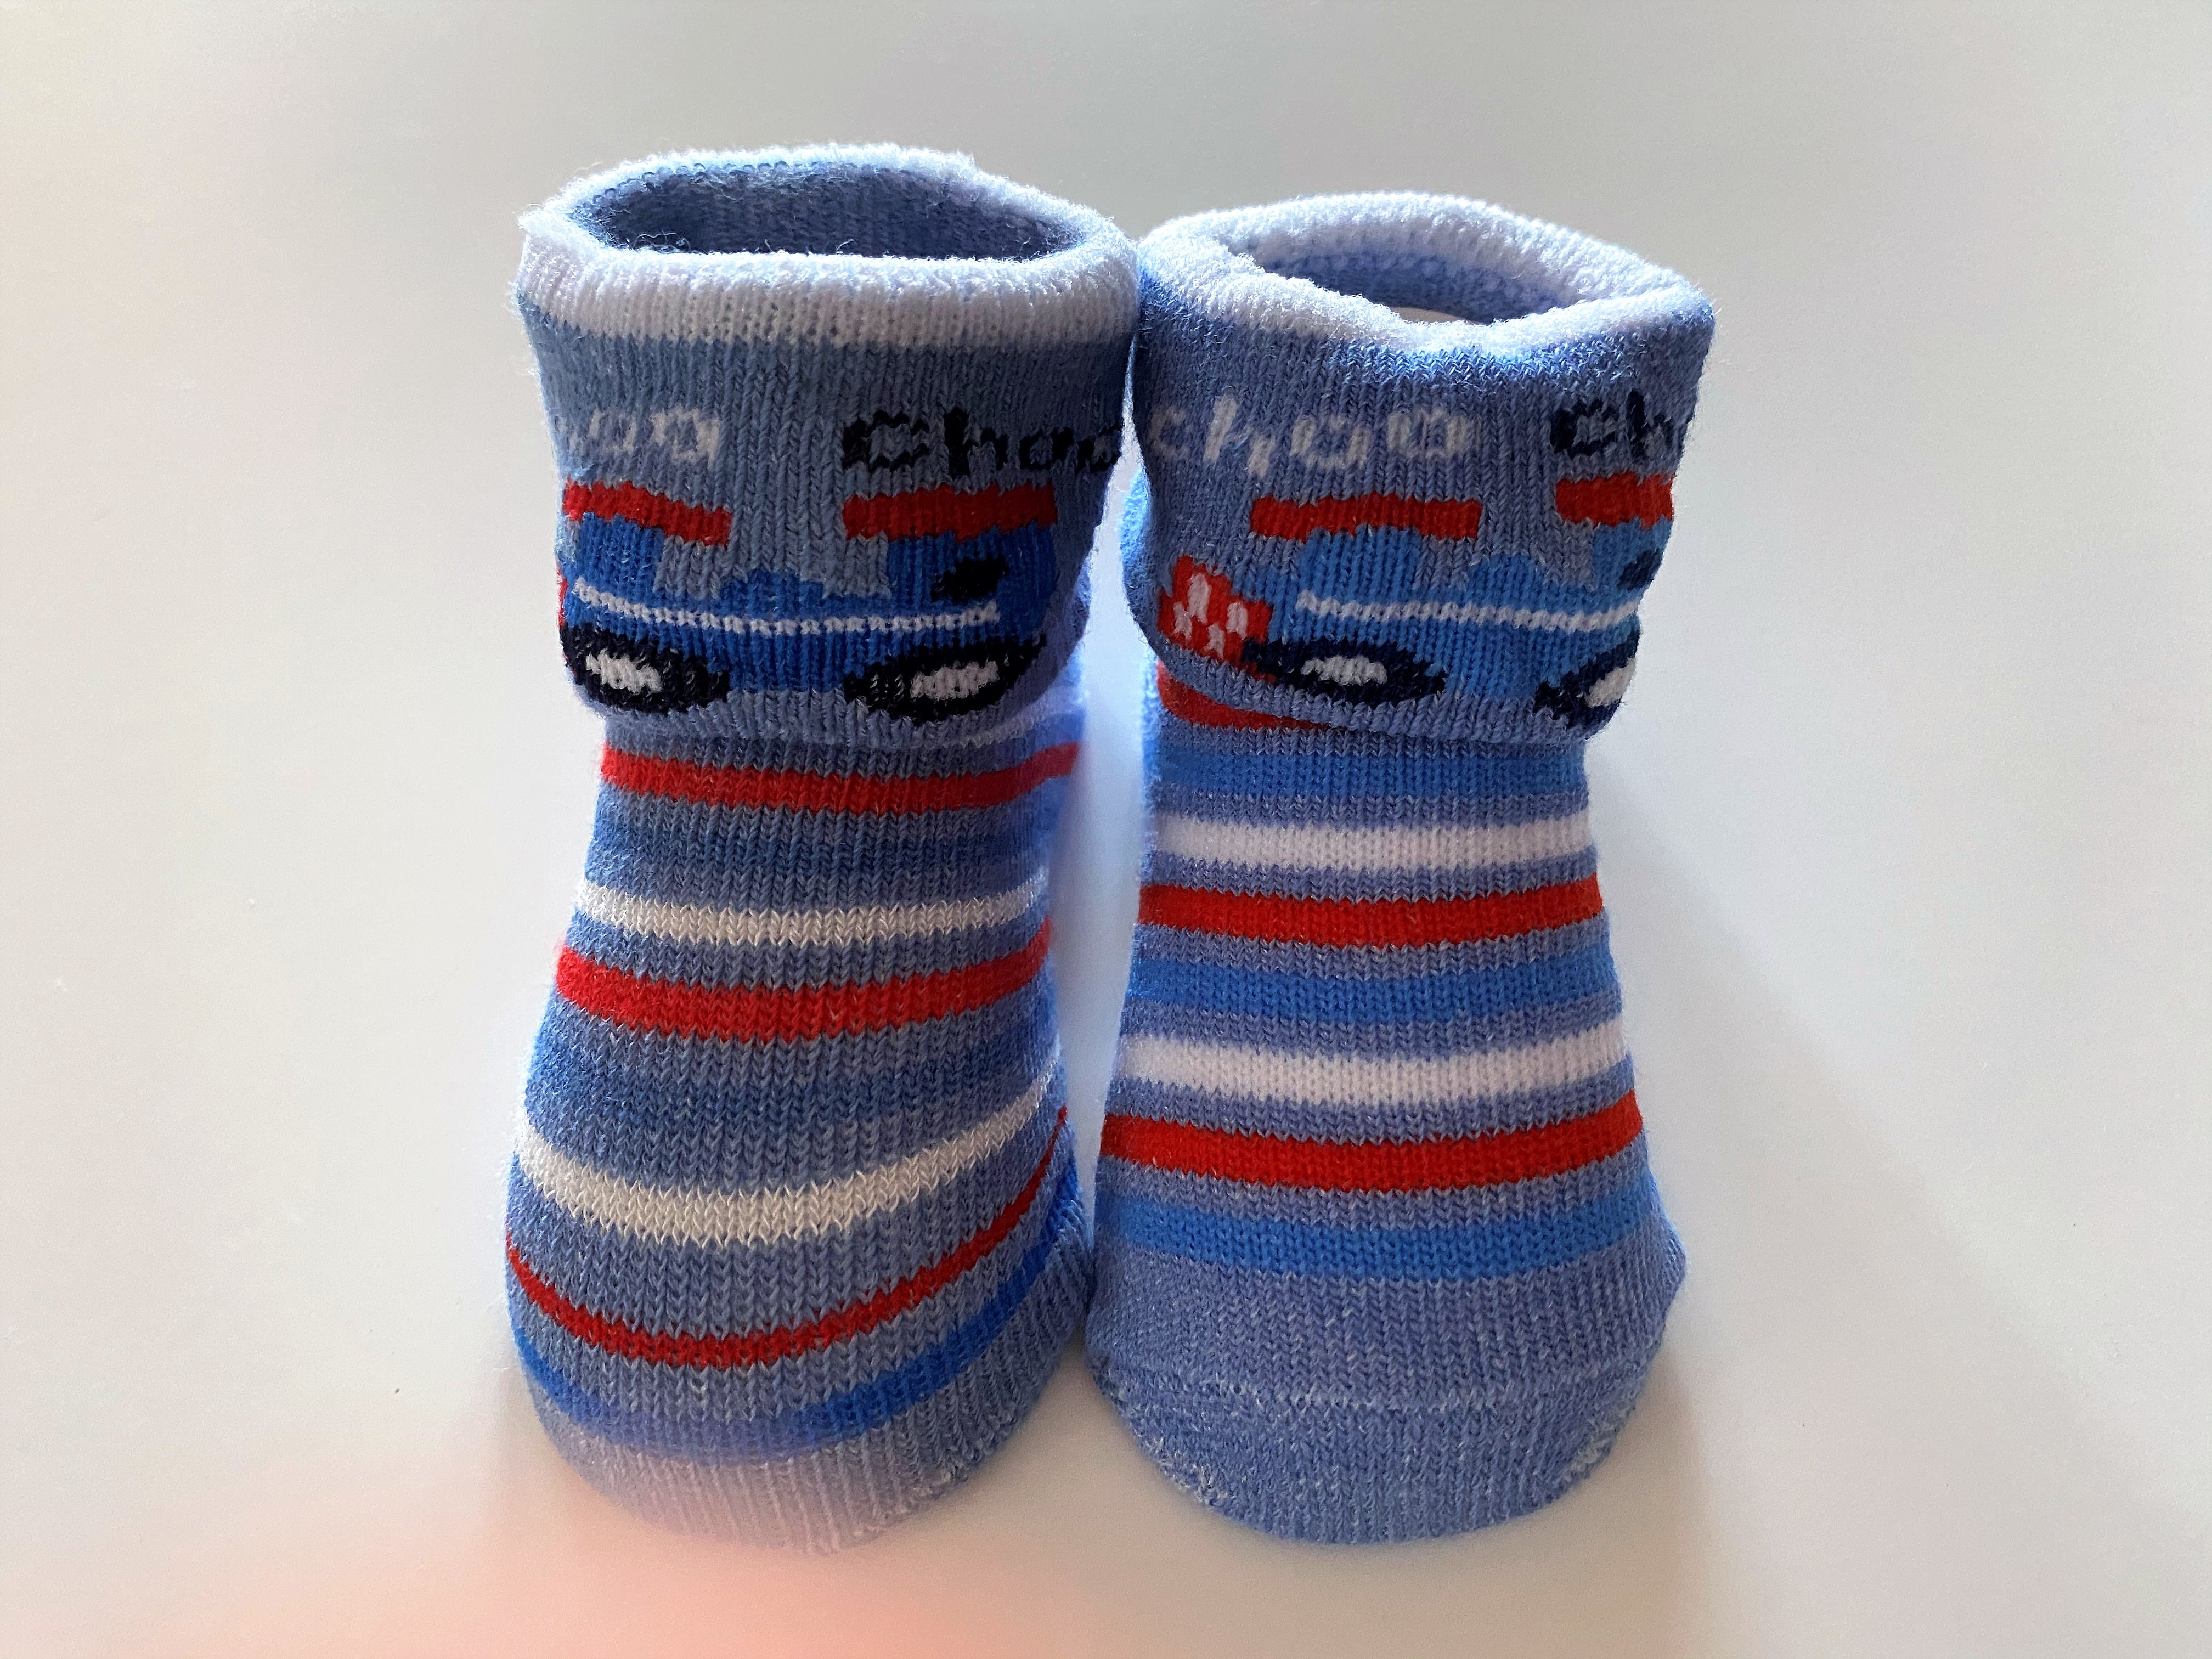 choo-choo-socks